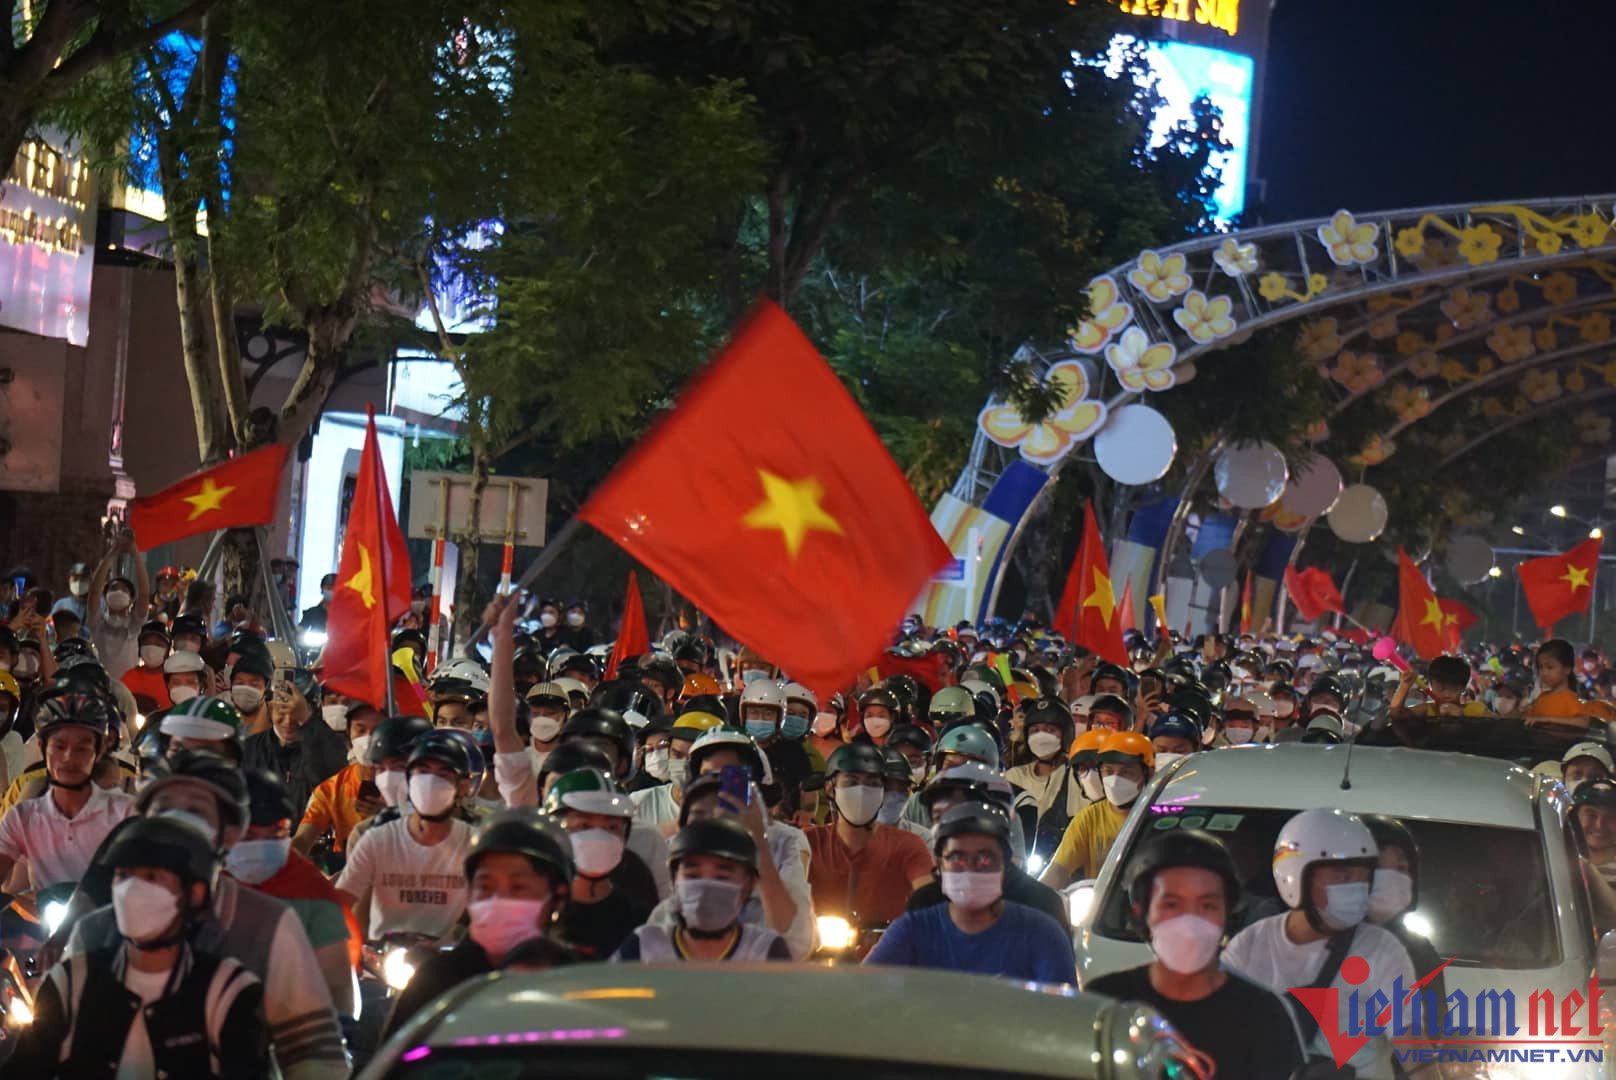 Sau chiến thắng của U23 Việt Nam, hàng ngàn người dân Đà Nẵng mang theo cờ Tổ quốc đổ xuống các tuyến đường trung tâm thành phố như Nguyễn Văn Linh, Lê Duẩn, Điện Biên Phủ... ăn mừng, hô vang 